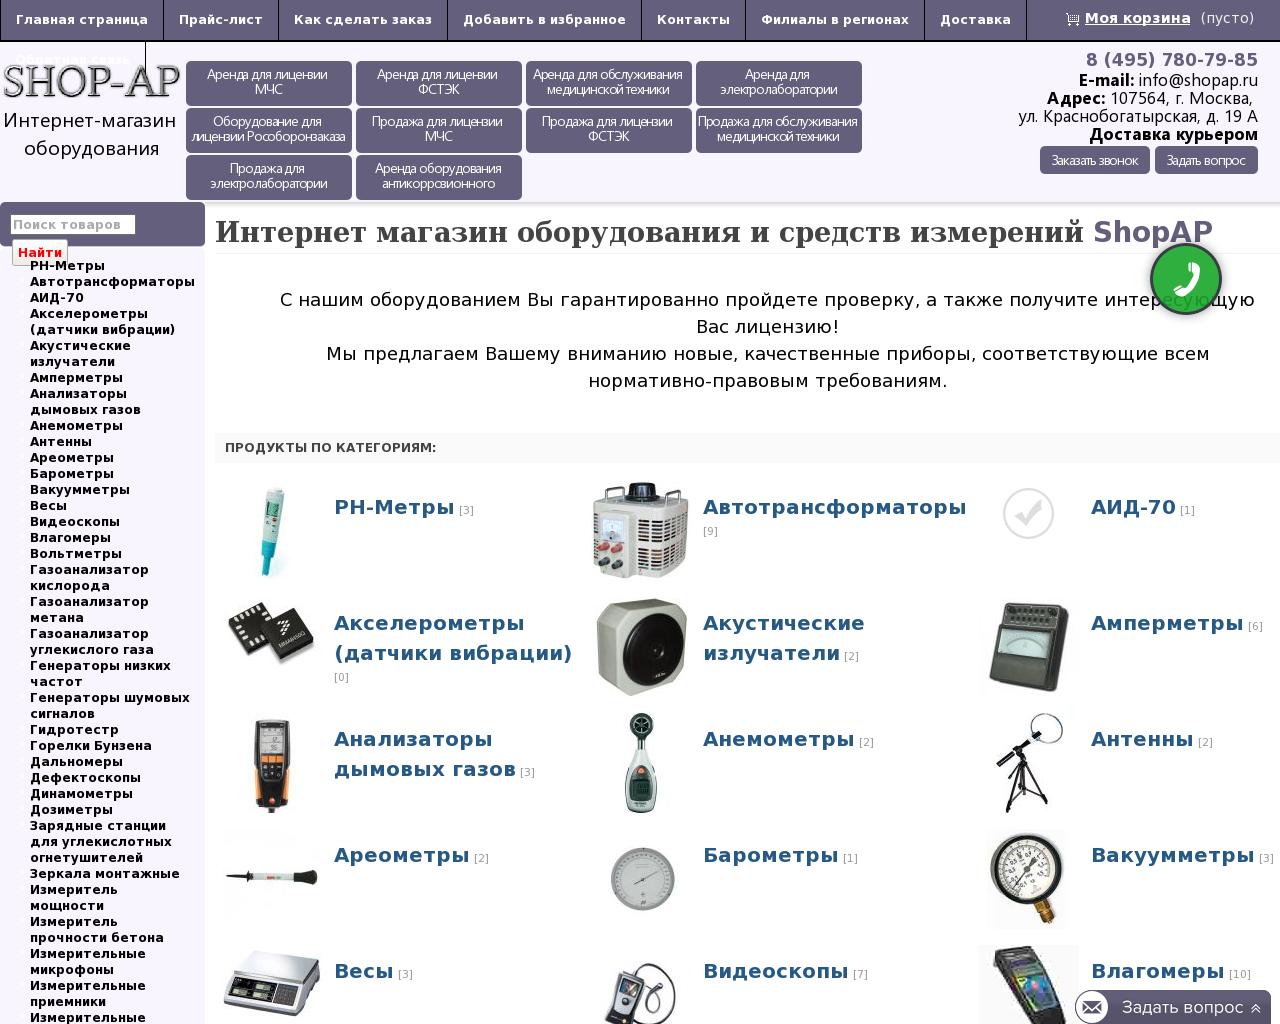 Изображение сайта shopap.ru в разрешении 1280x1024